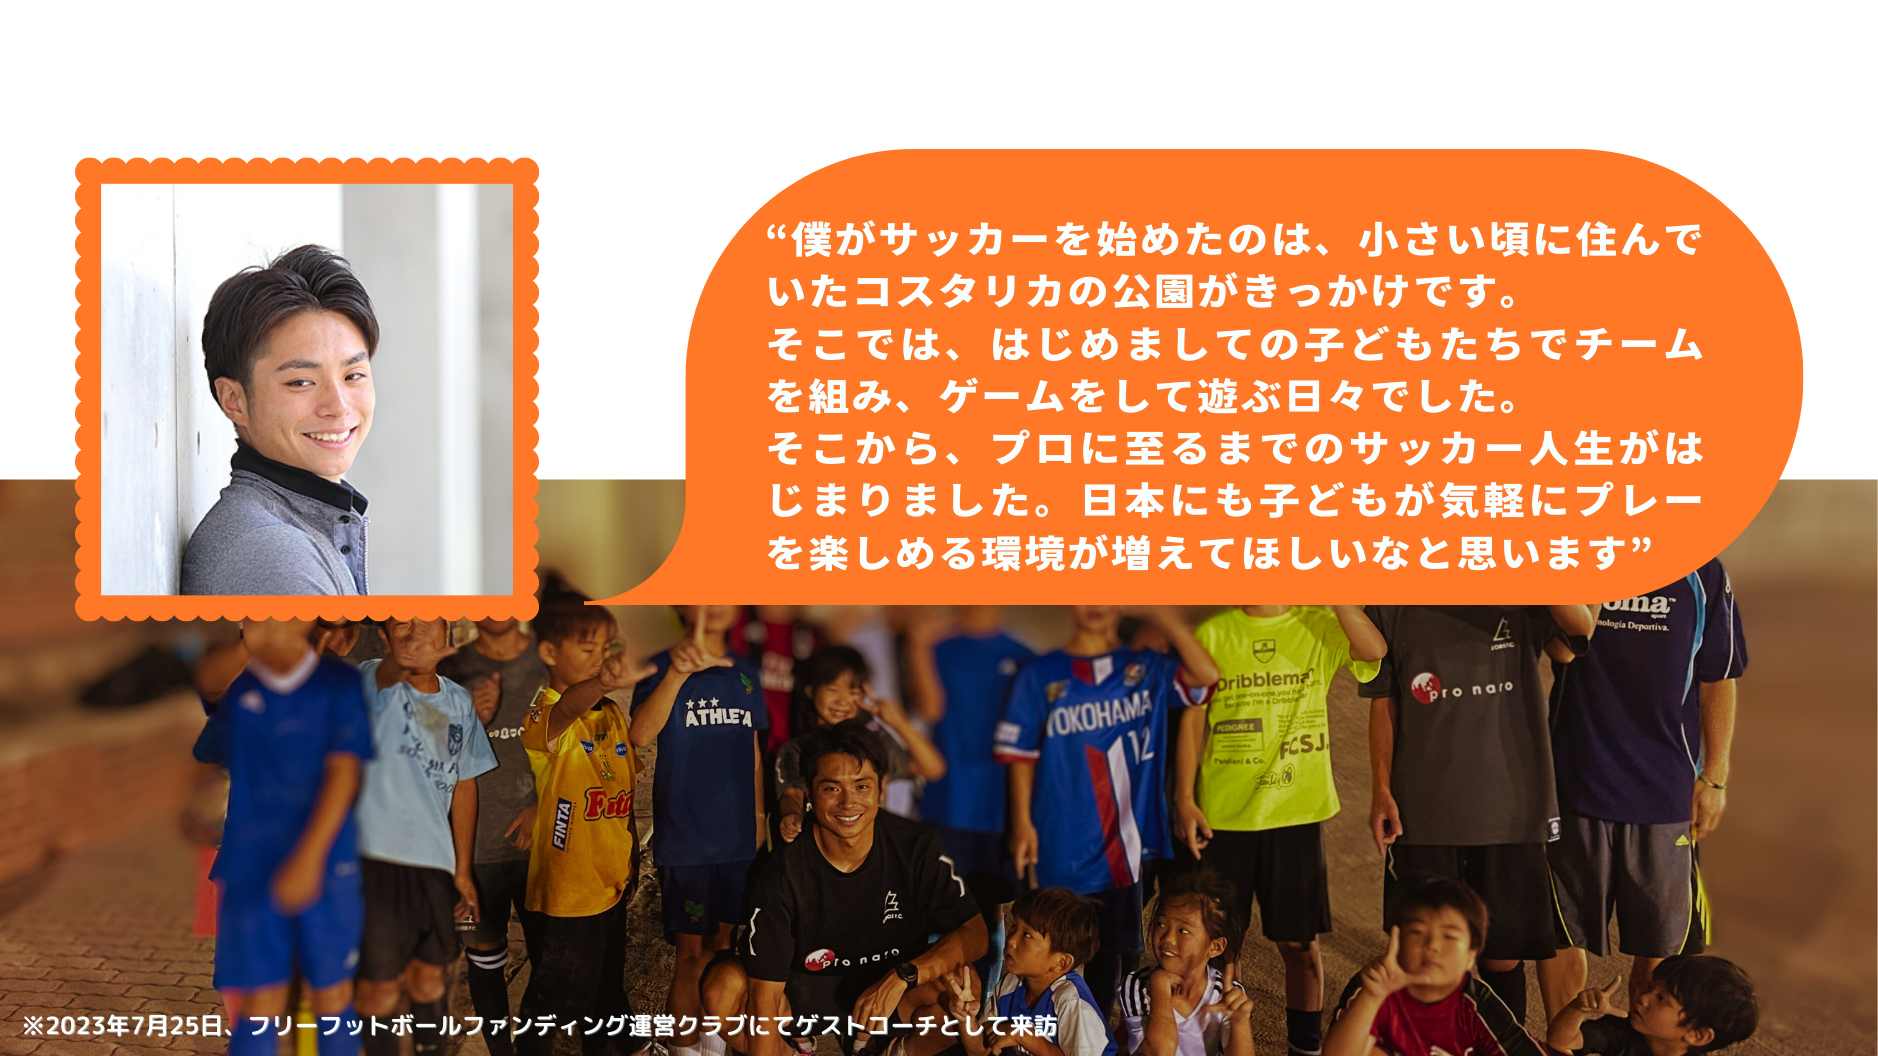 “僕がサッカーを始めたのは、小さい頃に住んでいたコスタリカの公園がきっかけです。 そこでは、はじめましての子どもたちでチームを組み、ゲームをして遊ぶ日々でした。 そこから、プロに至るまでのサッカー人生がはじまりました。日本にも子どもが気軽にプレーを楽しめる環境が増えてほしいなと思います”